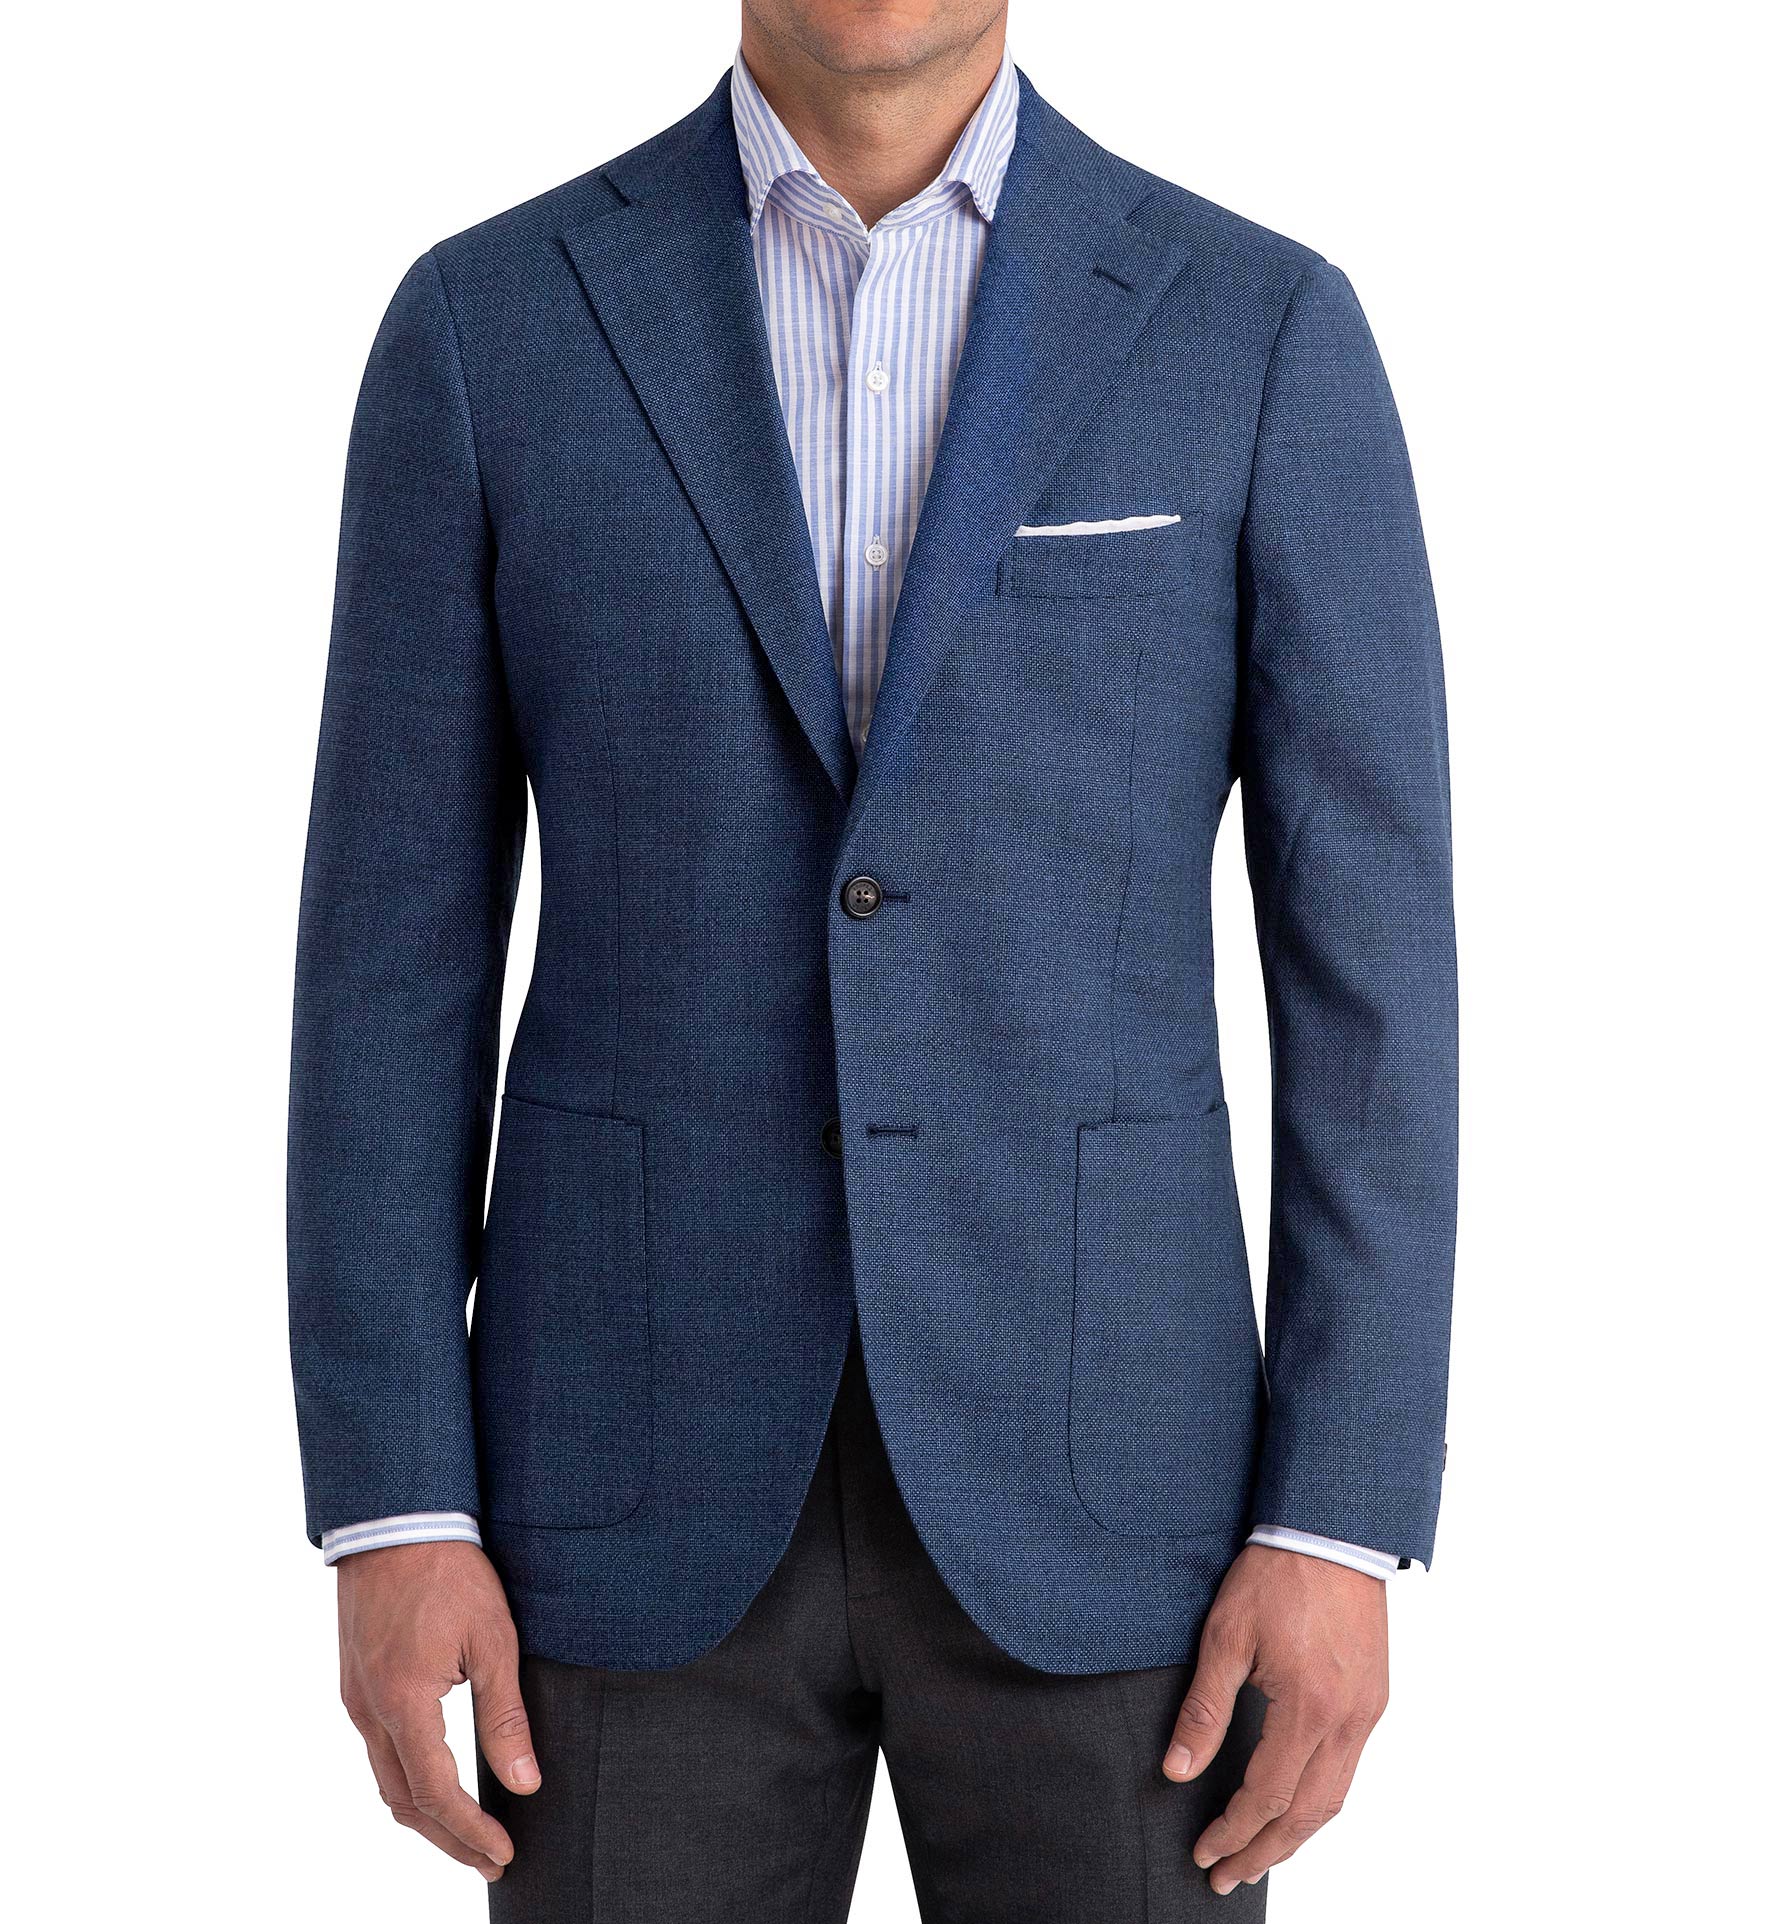 Bedford Ocean Blue Wool Hopsack Jacket - Custom Fit Tailored Clothing